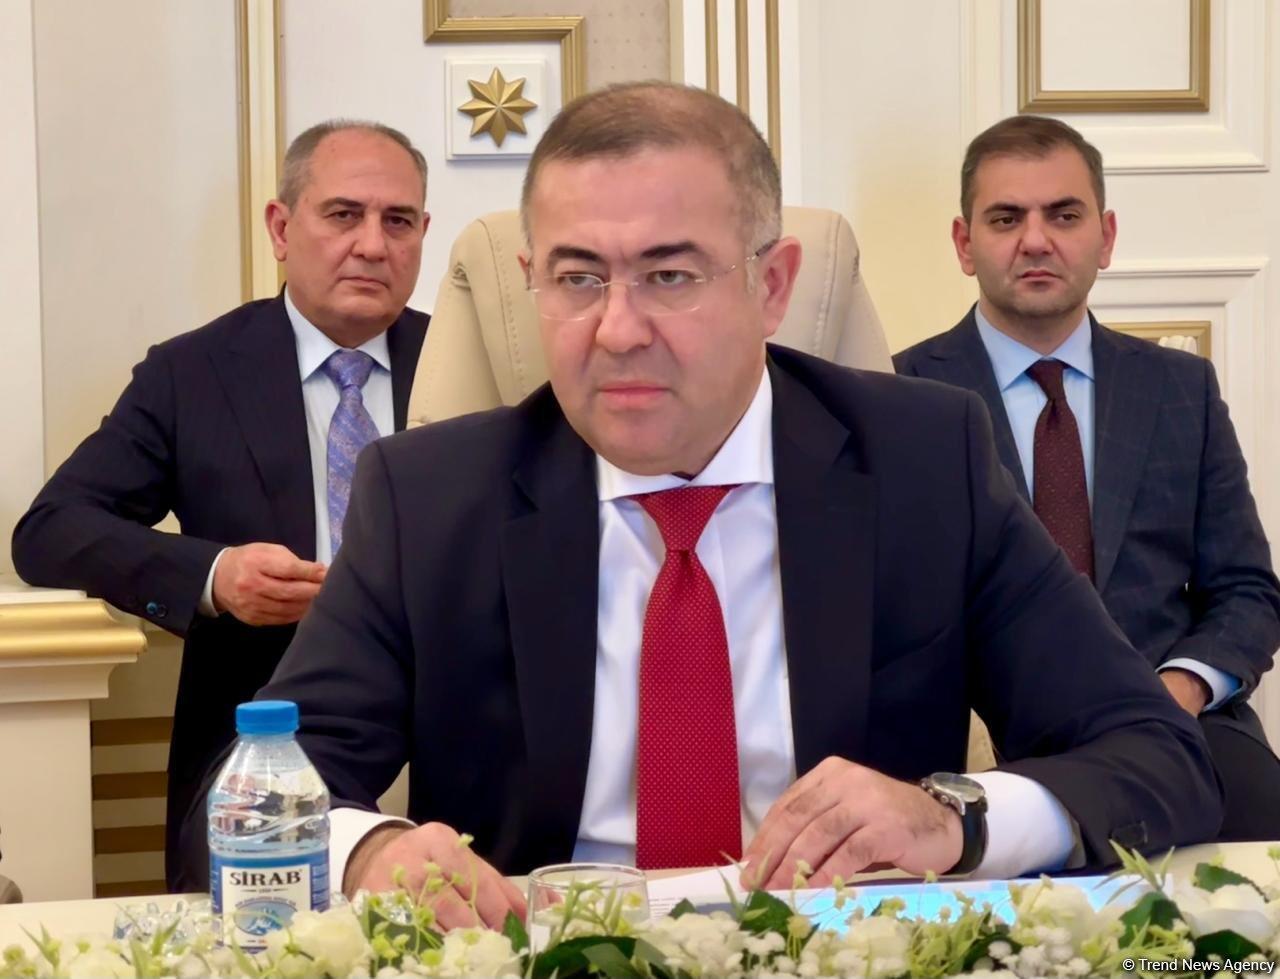 54 медиа-органа обратились в ЦИК Азербайджана по поводу платной агитации в связи с парламентскими выборами